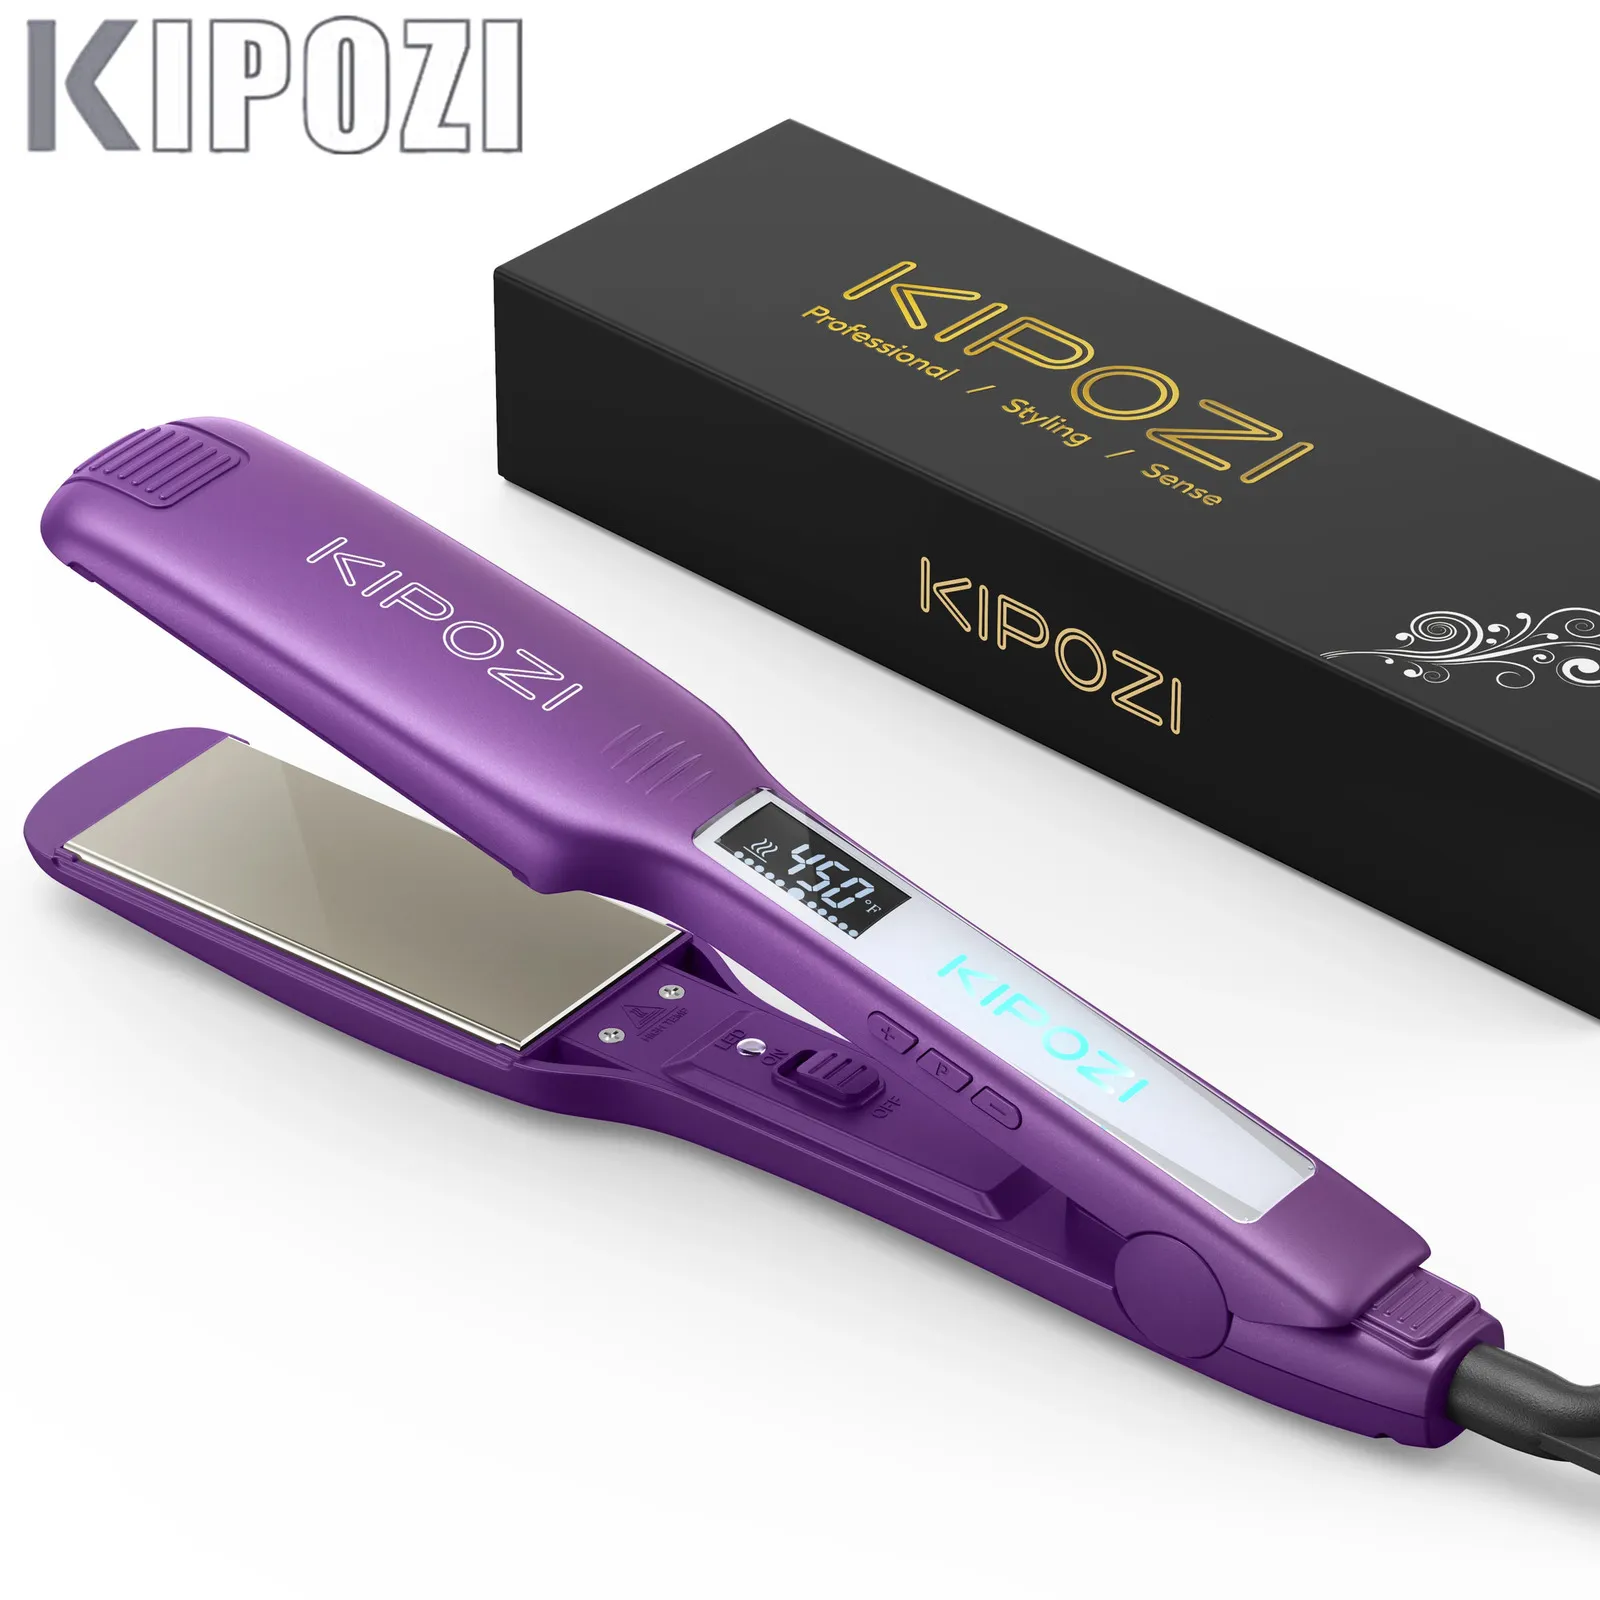 Haarglätter KIPOZI Professionelles Haarglätter-Glätteisen mit digitalem LCD-Display, Dual-Voltage-Sofortheizung, Lockenstab, Geschenk 231101